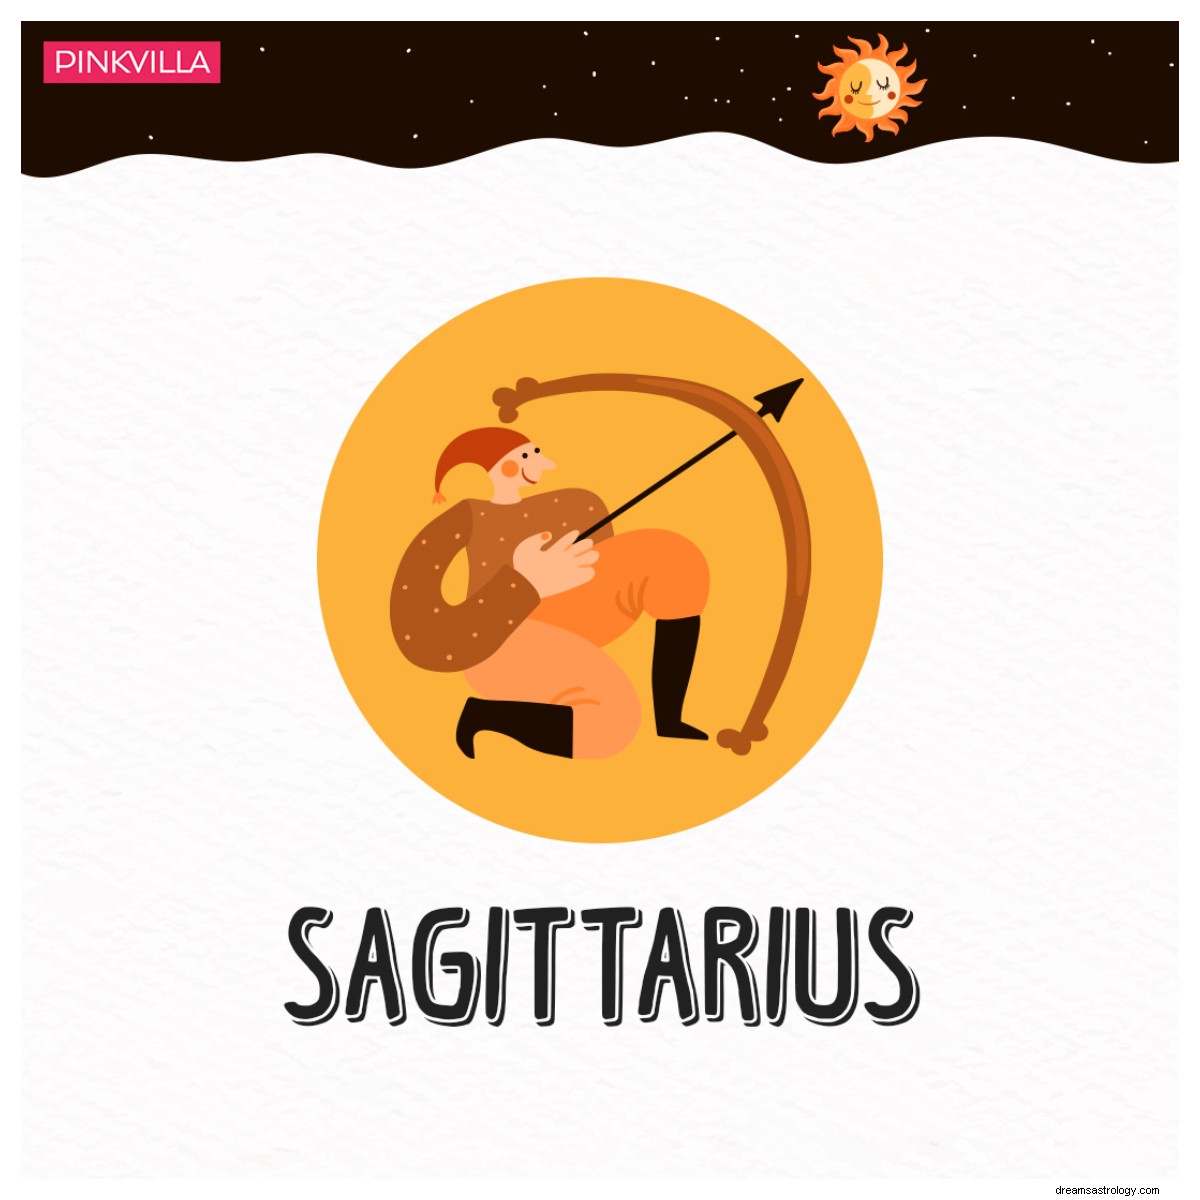 Dall Acquario al Sagittario:3 segni zodiacali che fingono di prendersi cura delle altre persone 